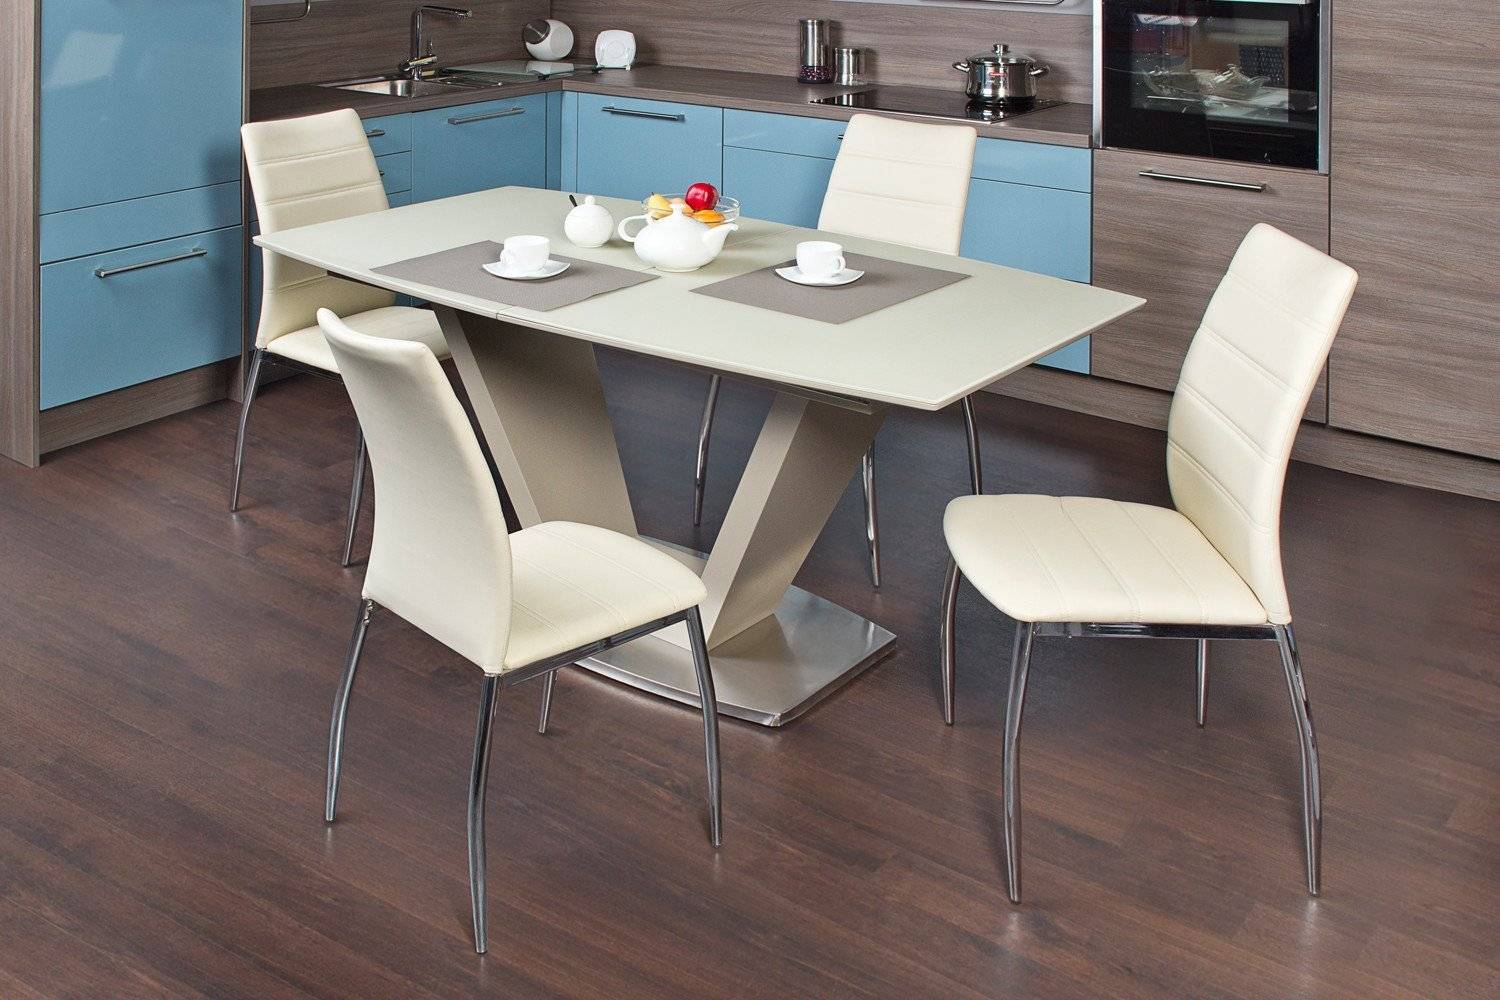 Кухонный комплект стол и стулья. Кухонный стол Sagrada td -1397. Стол обеденный Sagrada td 1397. Хофф кухонные столы и стулья.